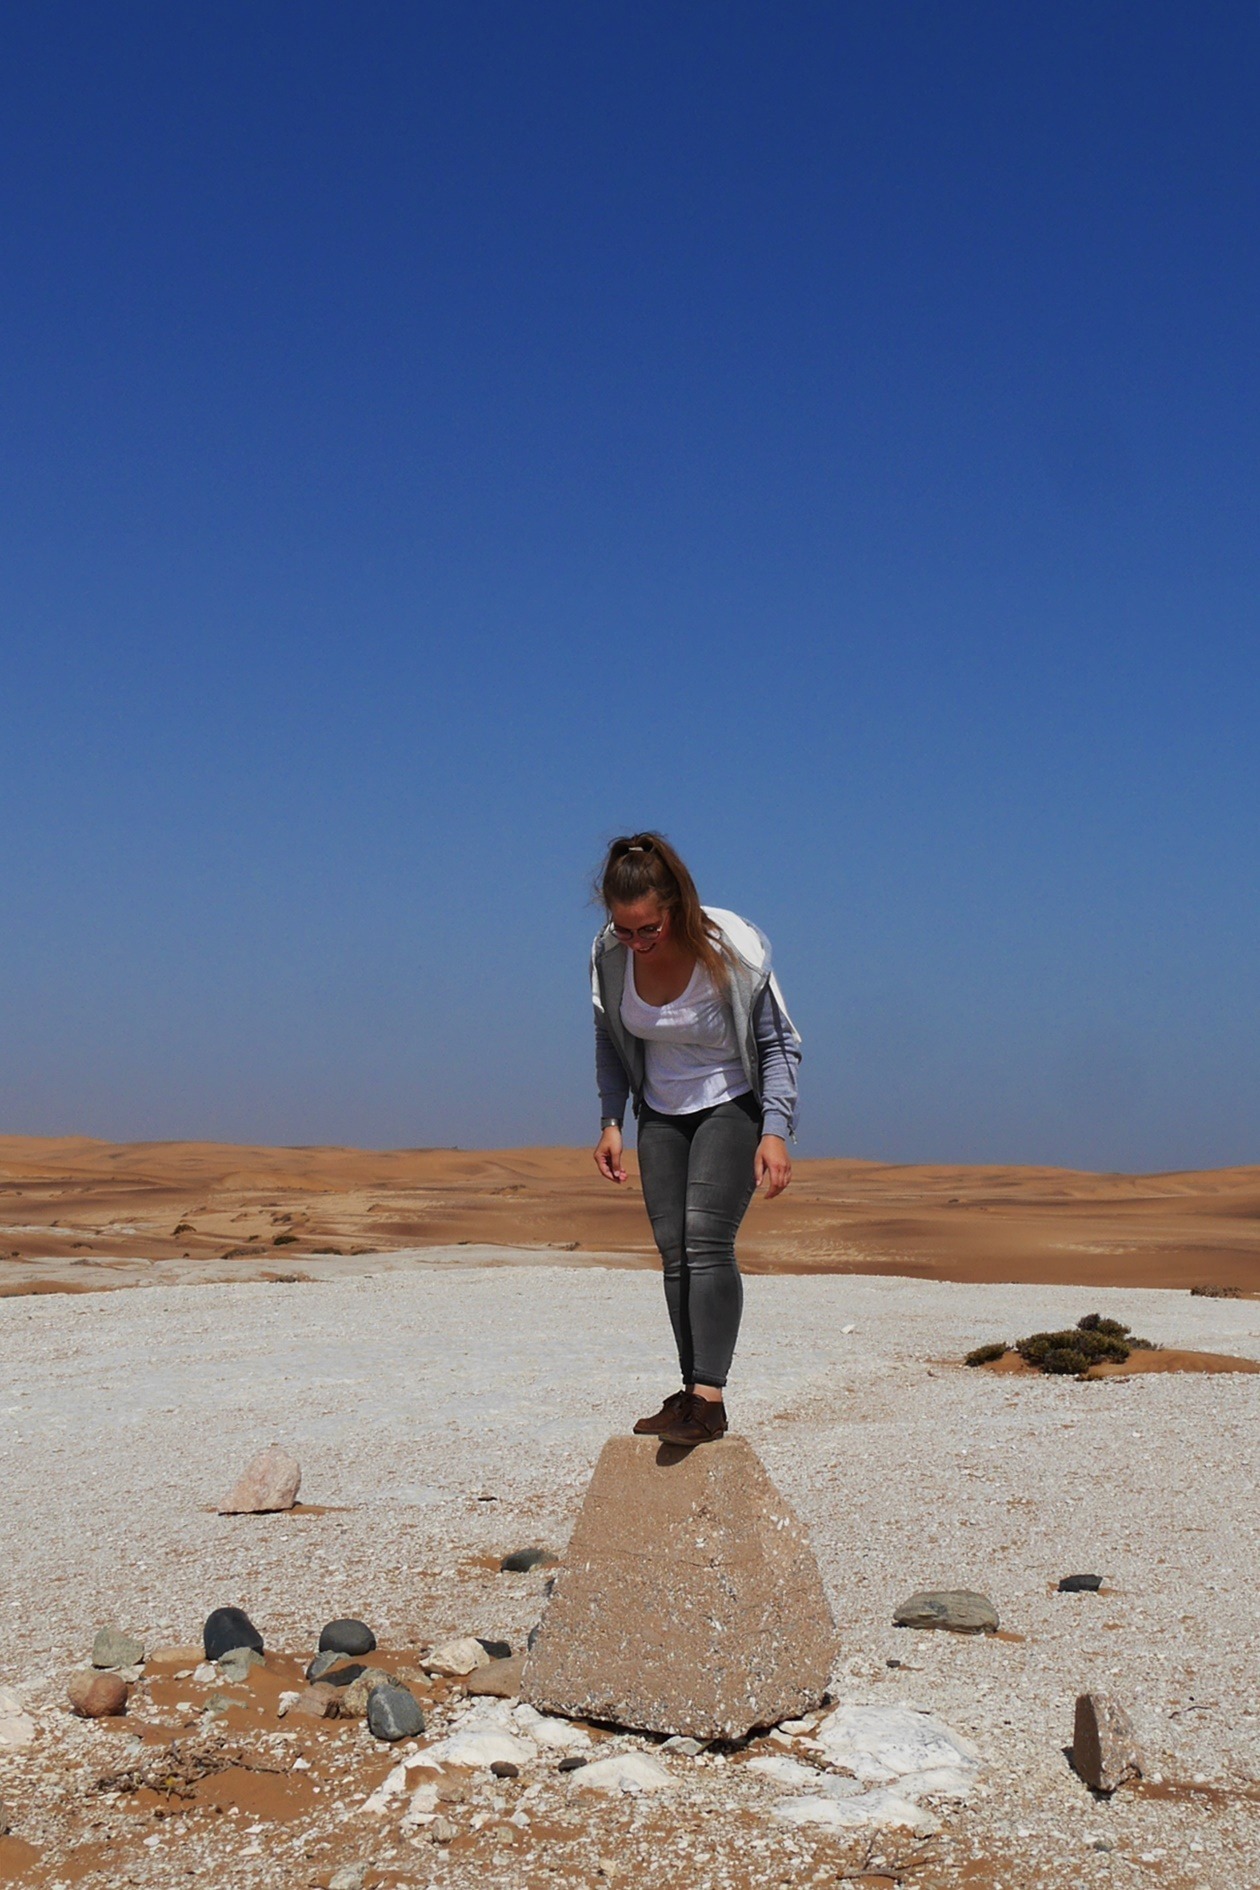 Lieschenradieschen auf einem Stein in der Namib Wüste